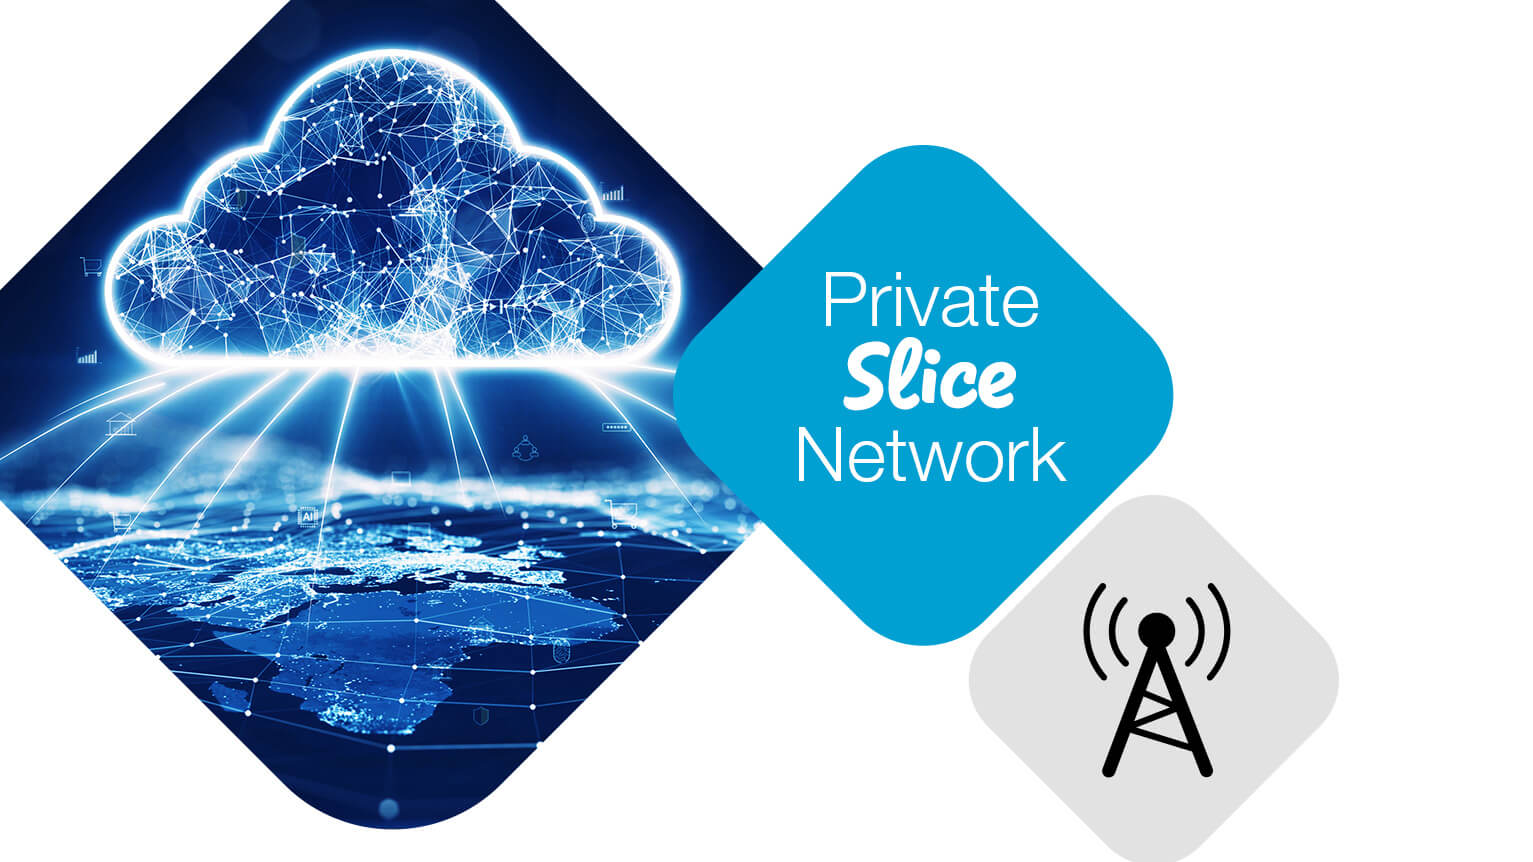 Private Slice Network